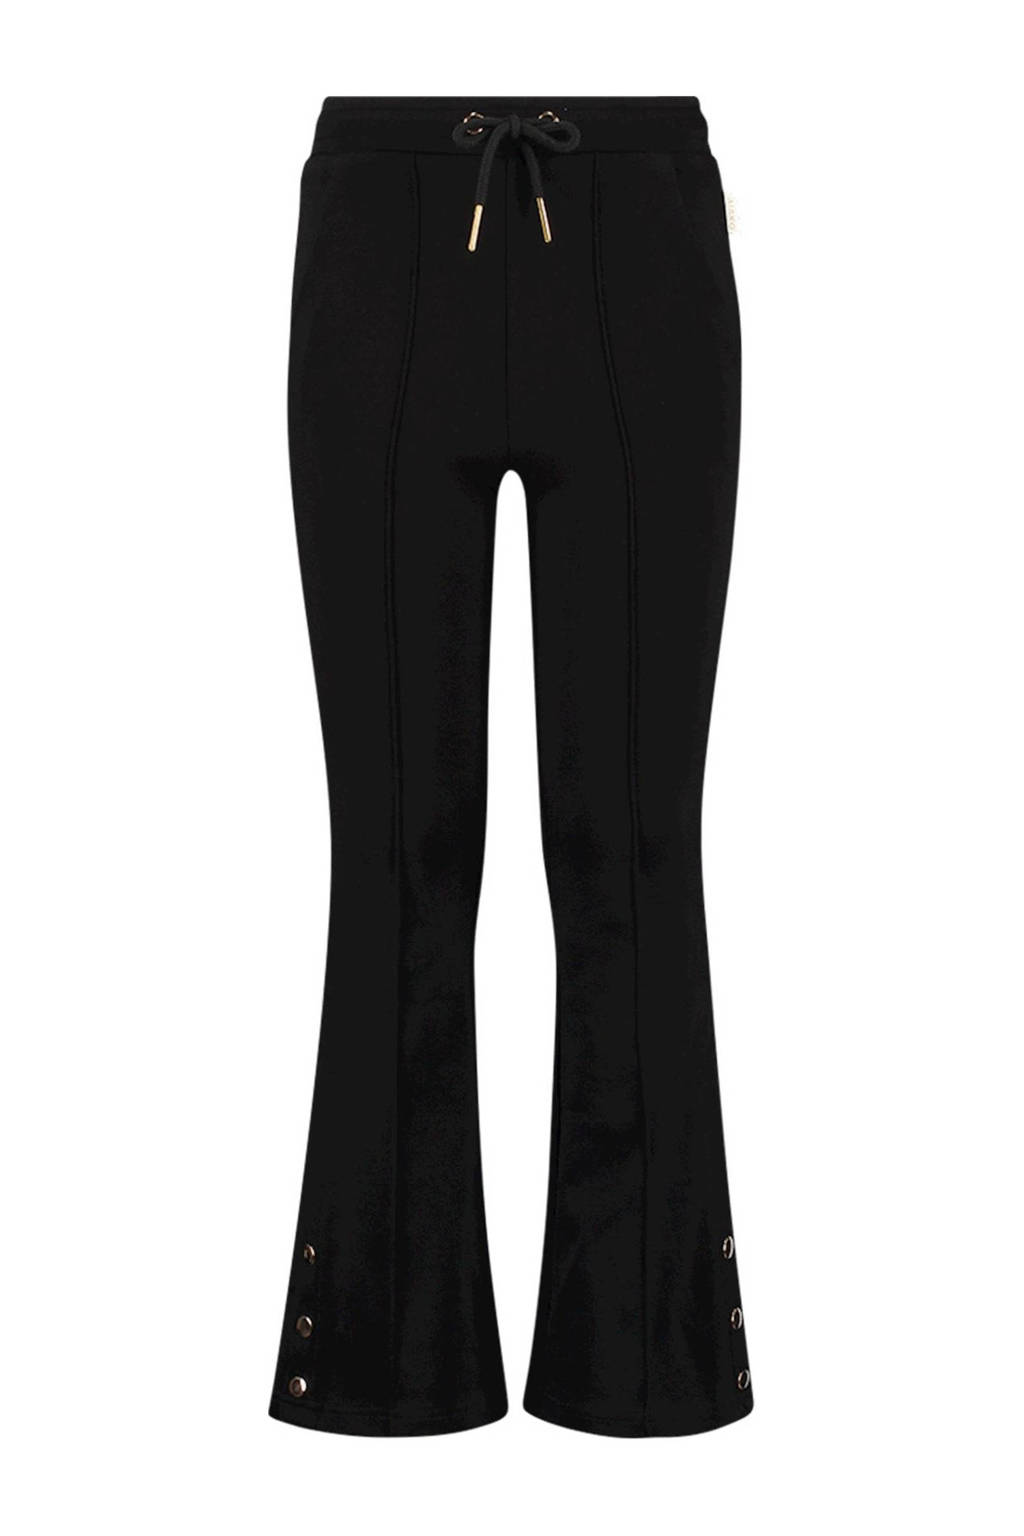 Zwarte meisjes AI&KO flared broek Silina van viscose met regular waist en elastische tailleband